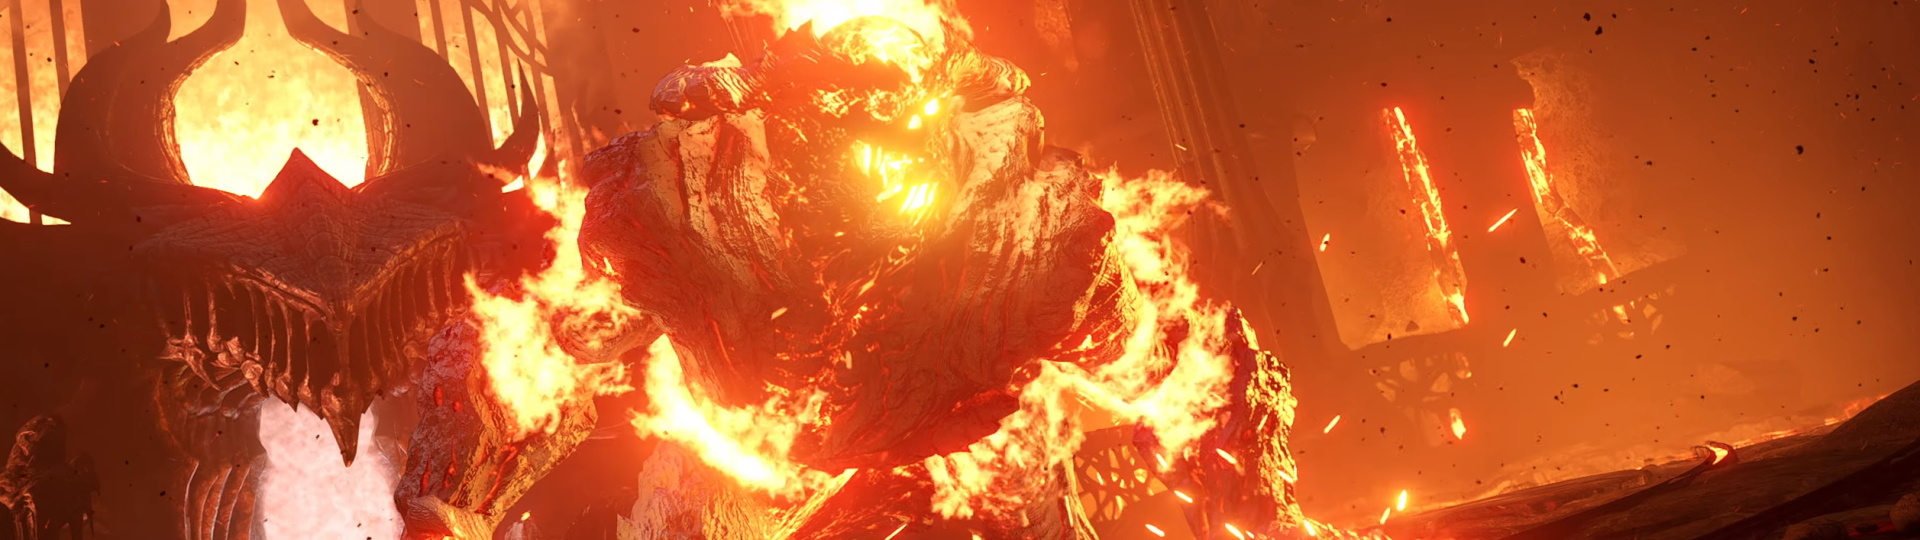 Podívejte se, jak vznikal remake Demon's Souls pro PS5 | Videa